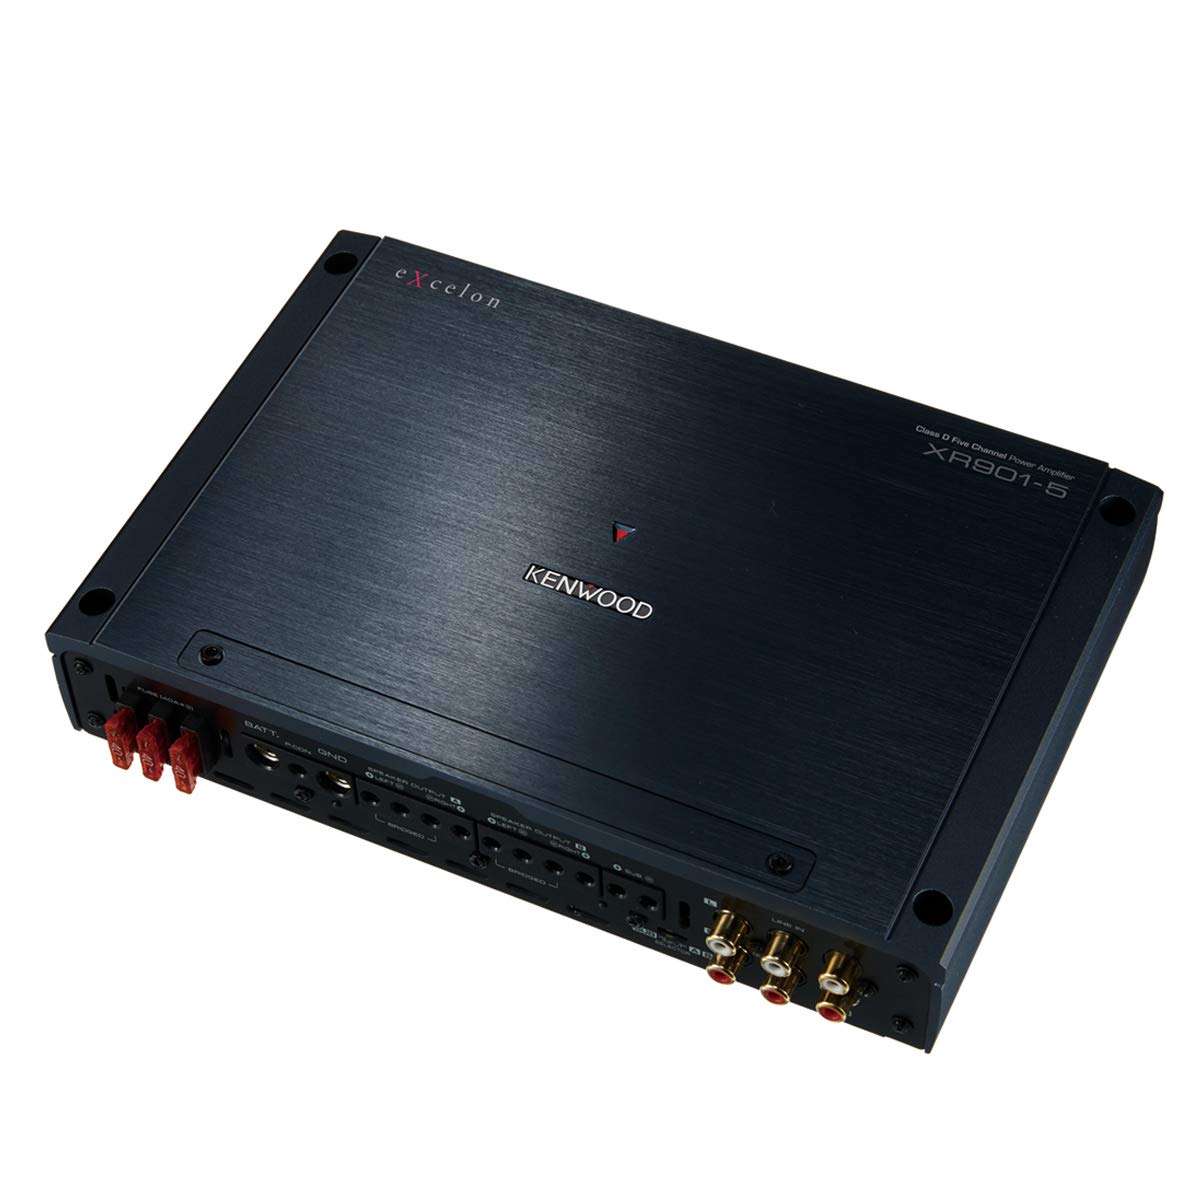 Kenwood XR901-5 eXcelon 900-Watt 5-Channel Car Amplifier